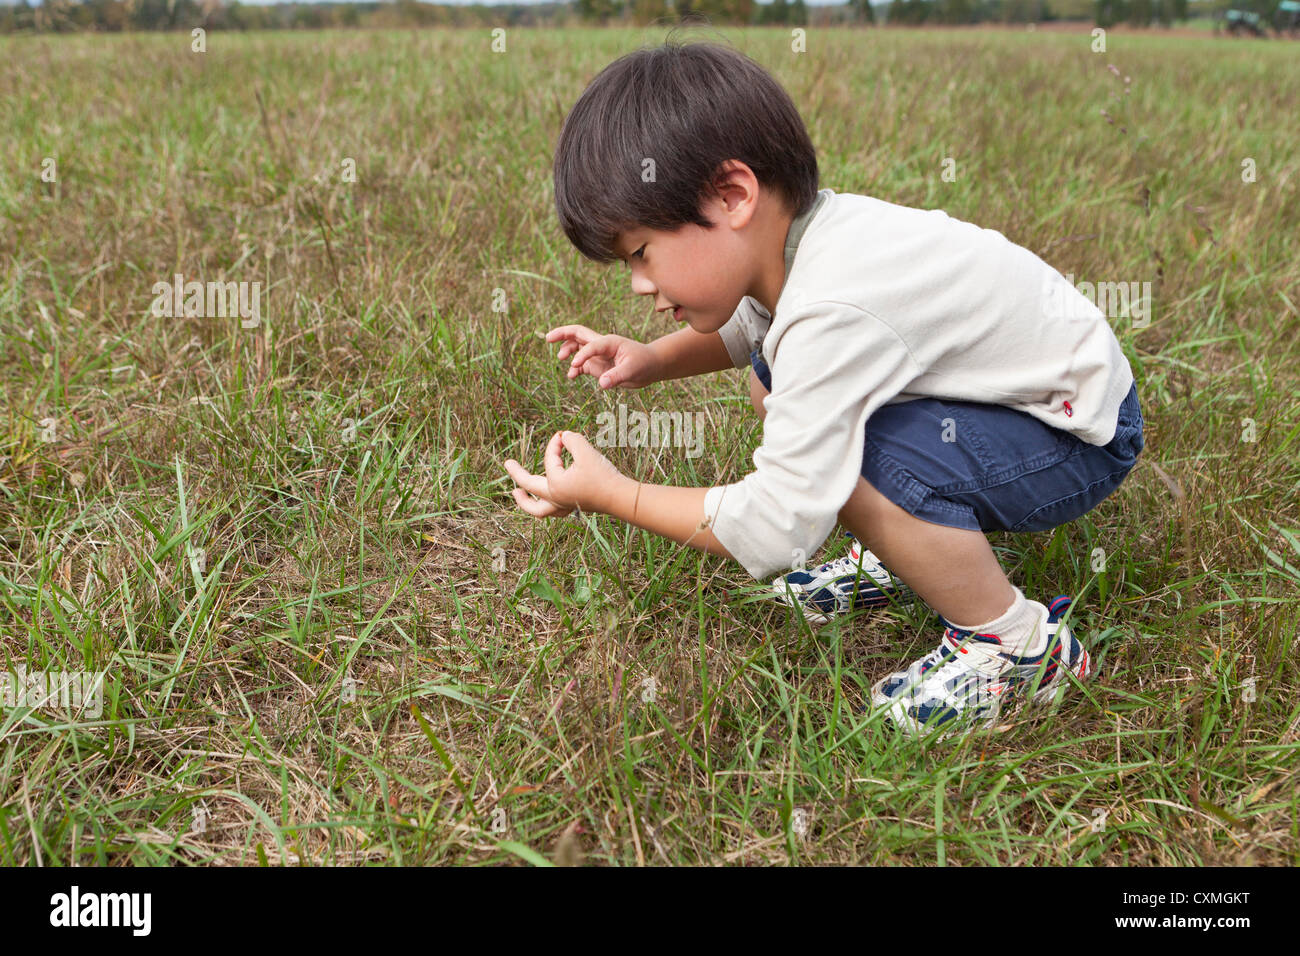 Asiatische junge Inspektion Insekten in einer Wiese Stockfoto